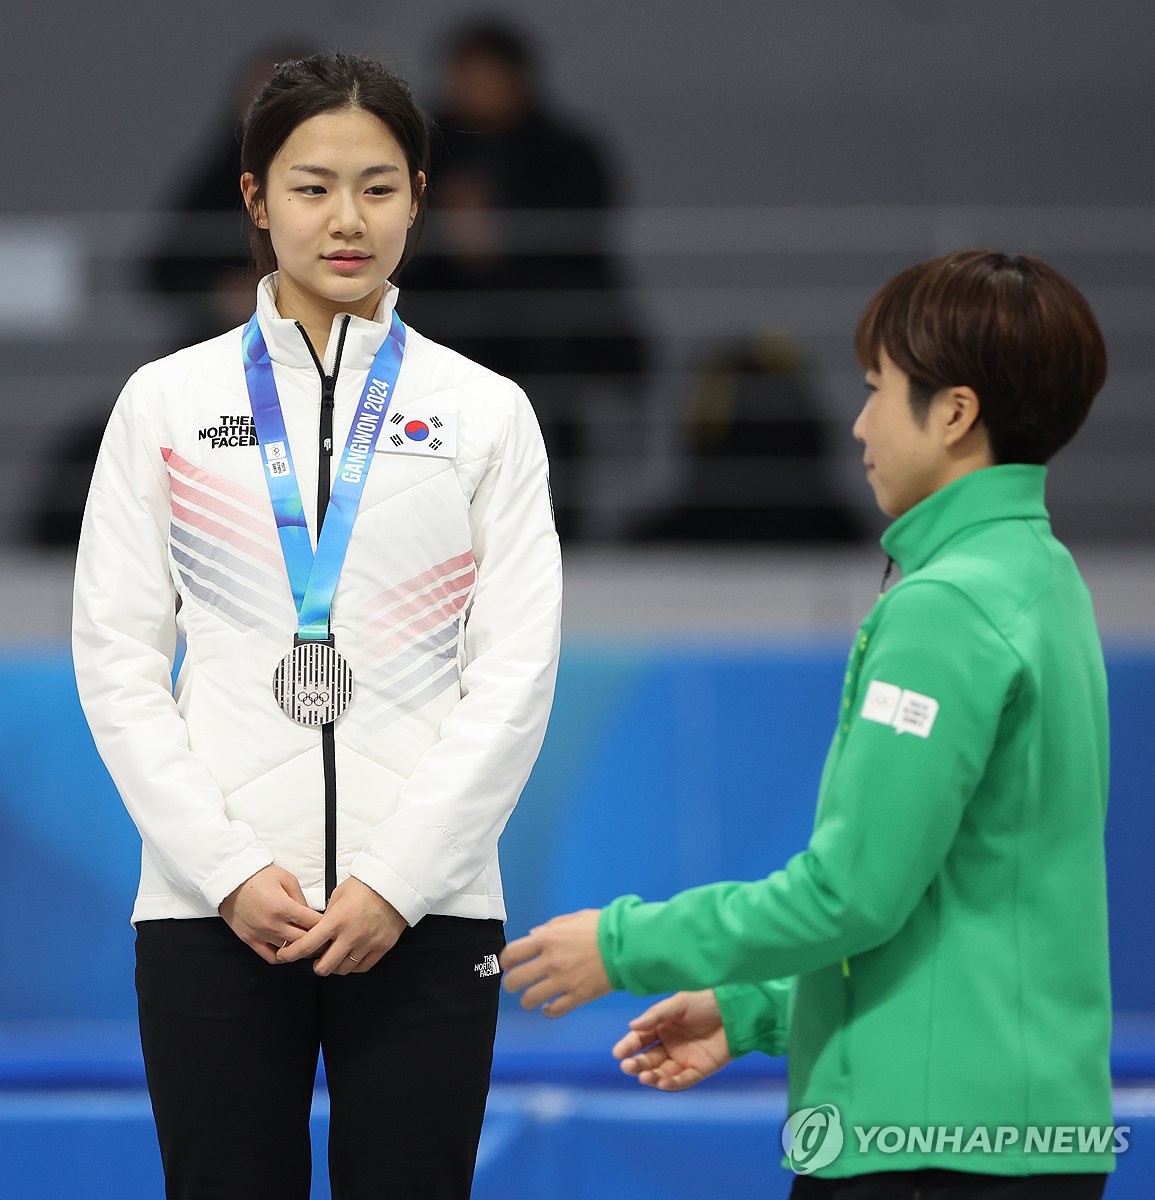 [청소년올림픽] 빙속 정희단, 돌발 변수에도 은메달 "재밌는 경험했어요"